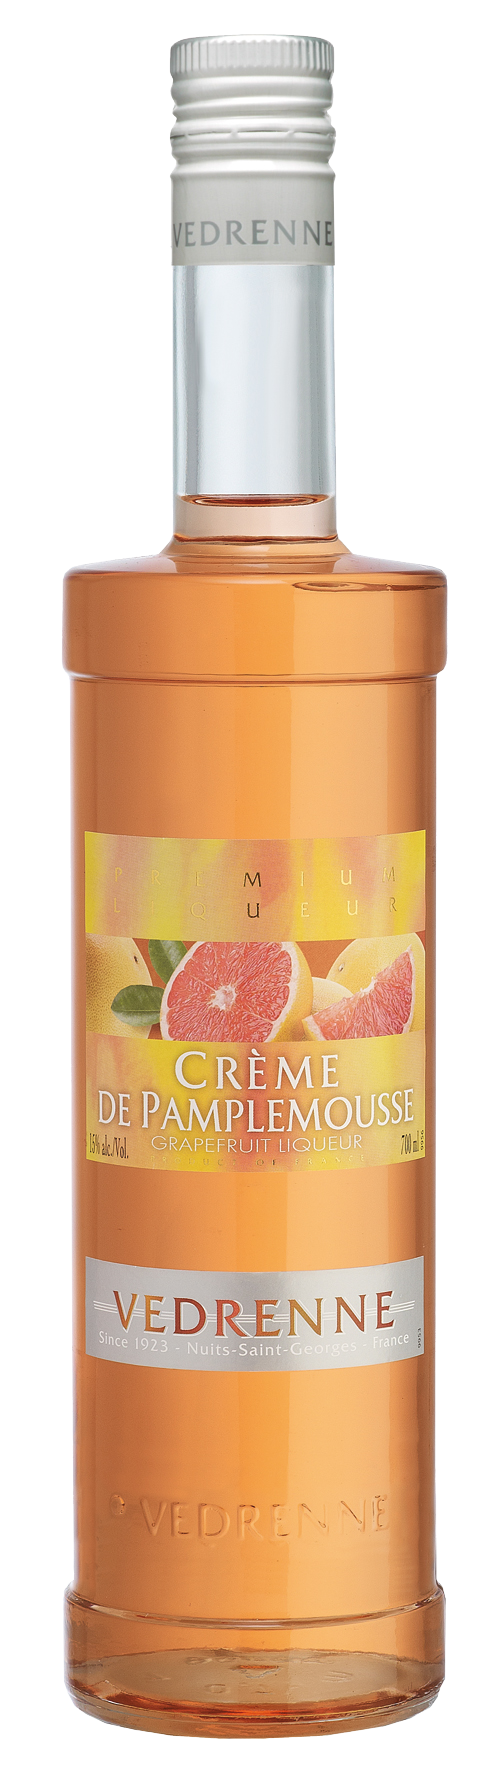 Crème de Pamplemousse VEDRENNE 15% - 70cl